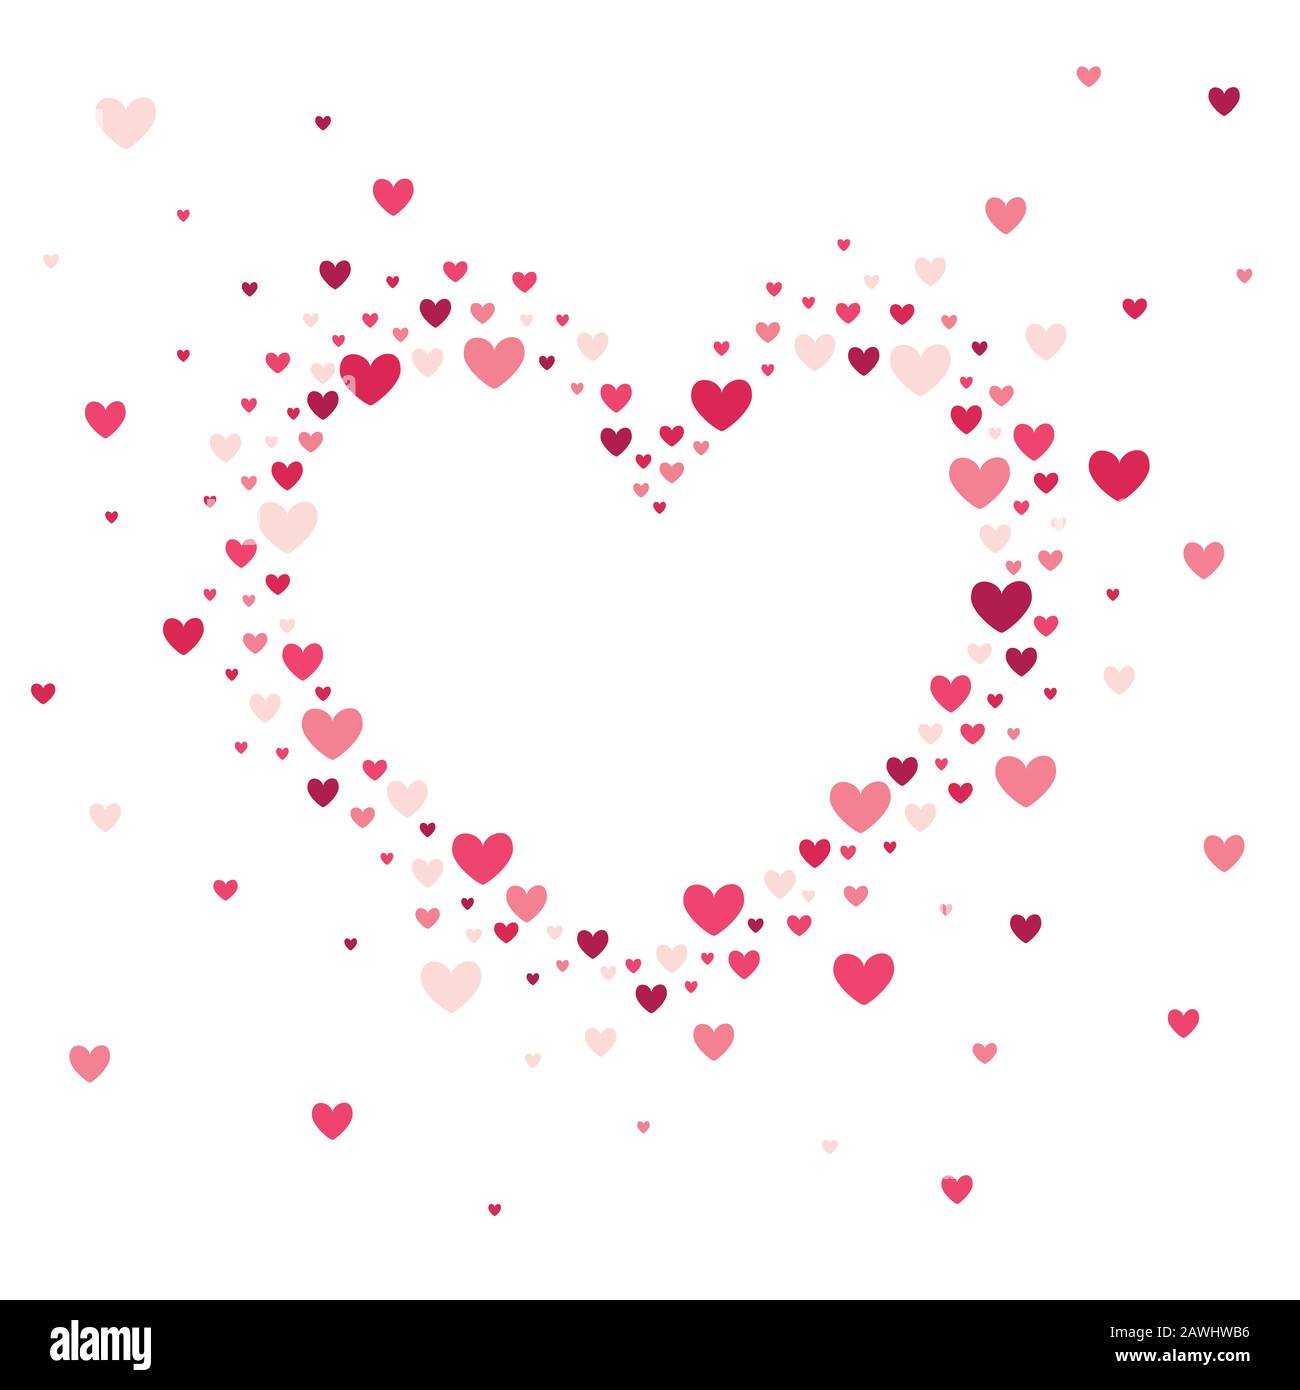 Hình nền trái tim màu hồng vector là một tác phẩm nghệ thuật đầy lãng mạn và ngọt ngào. Với sự kết hợp của hình trái tim và màu hồng tươi sáng, đây chắc chắn sẽ là hình nền tuyệt vời cho bất kỳ ai đang tìm kiếm sự đáng yêu và lãng mạn.